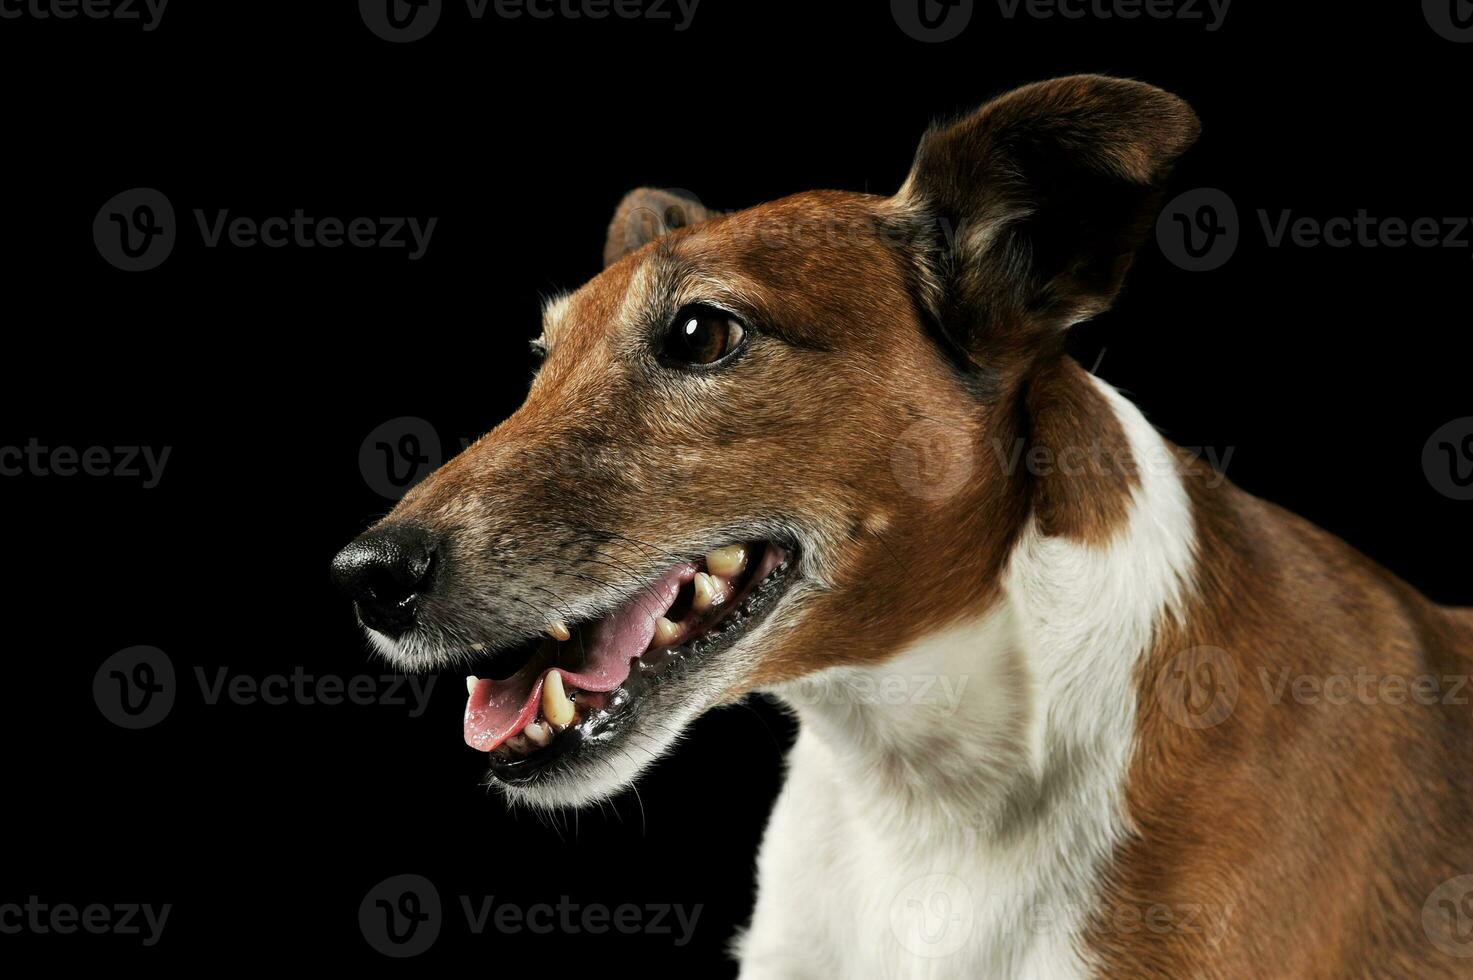 Porträt eines entzückenden Jack Russell Terrier foto